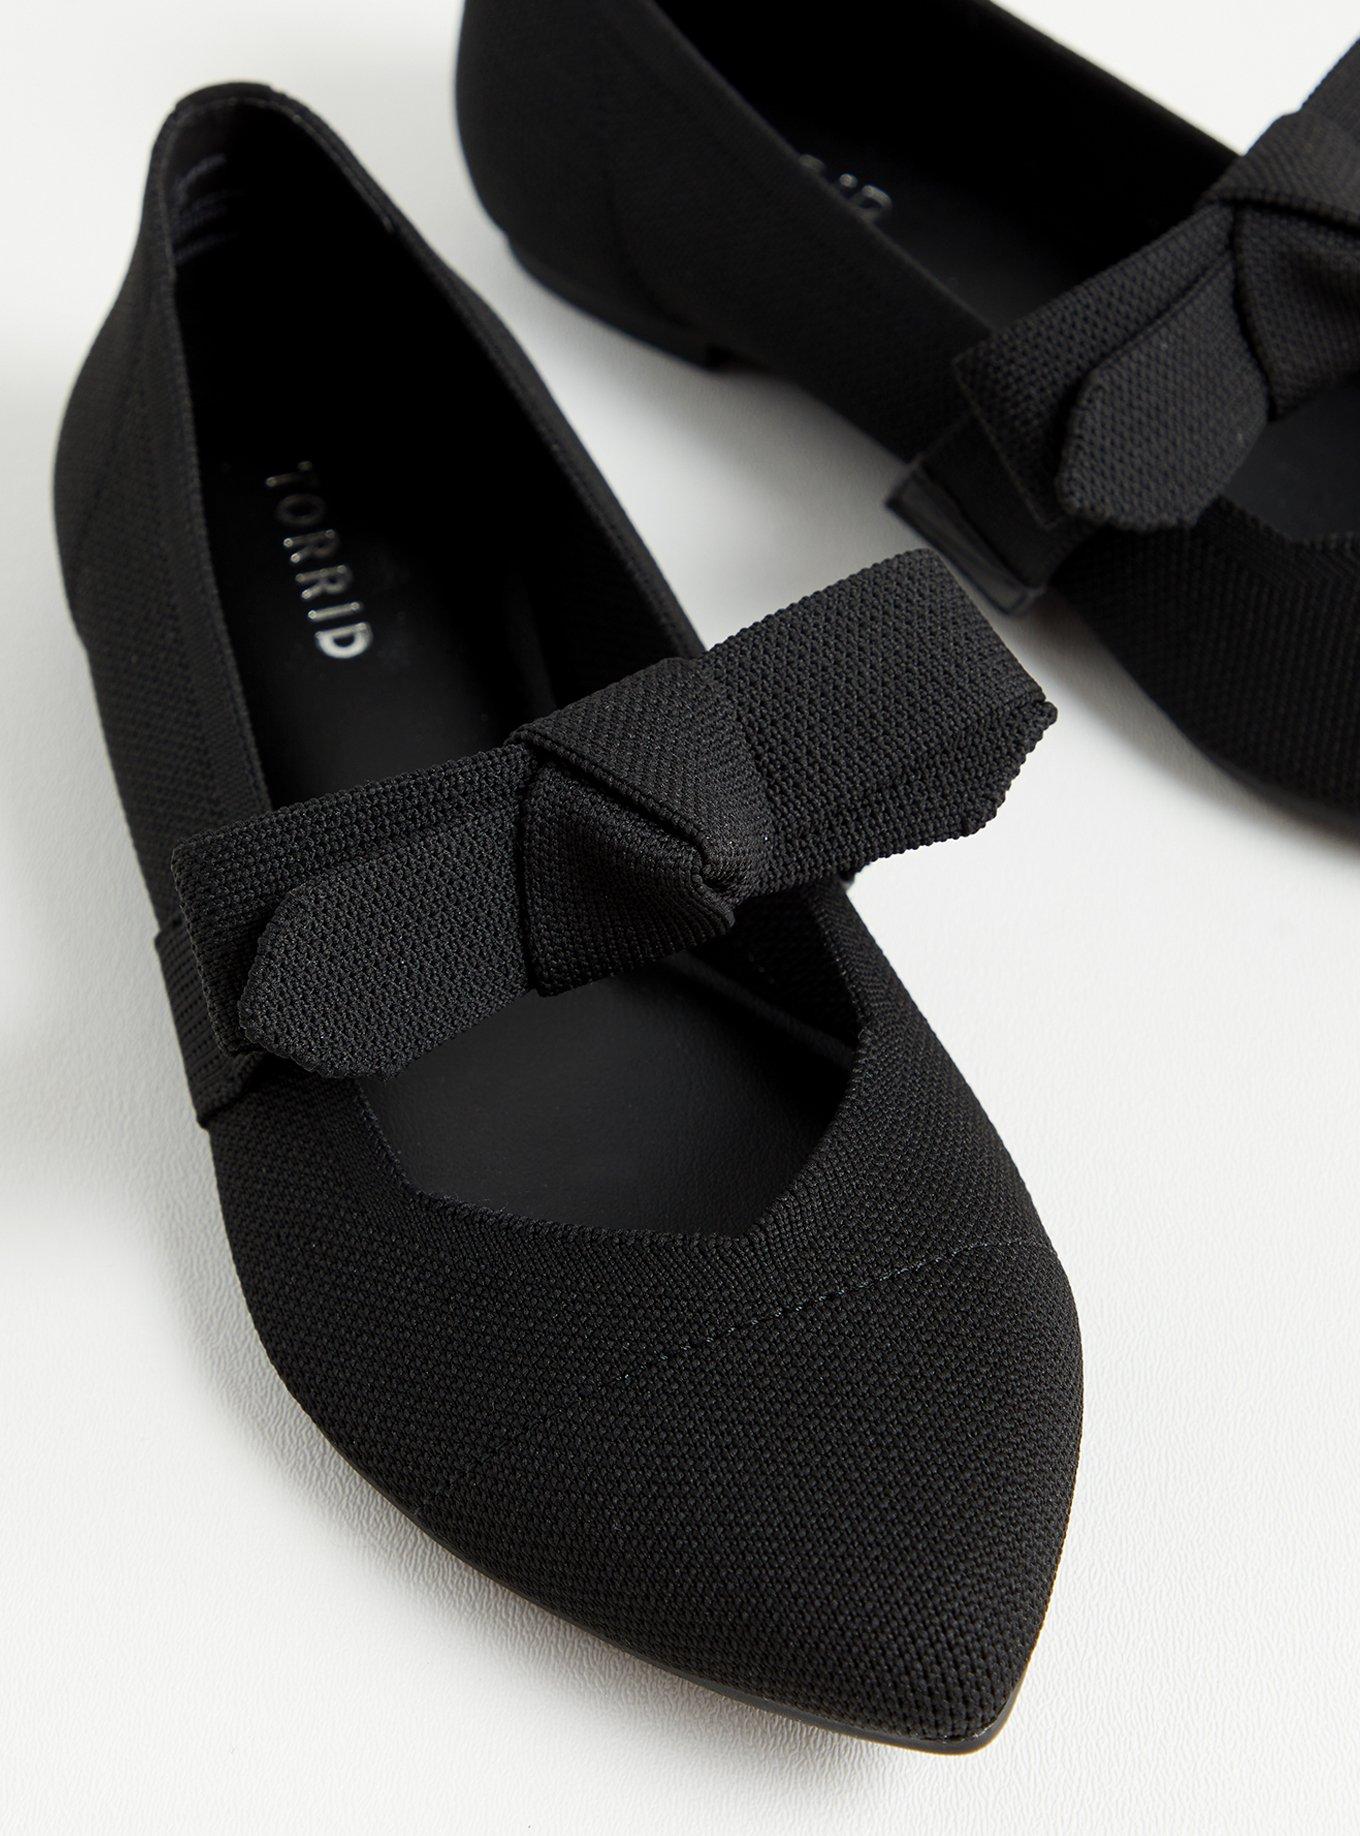 Zapatos de tacón alto y grueso para mujer, calzado de piel auténtica, color  negro, a la moda, para primavera - AliExpress